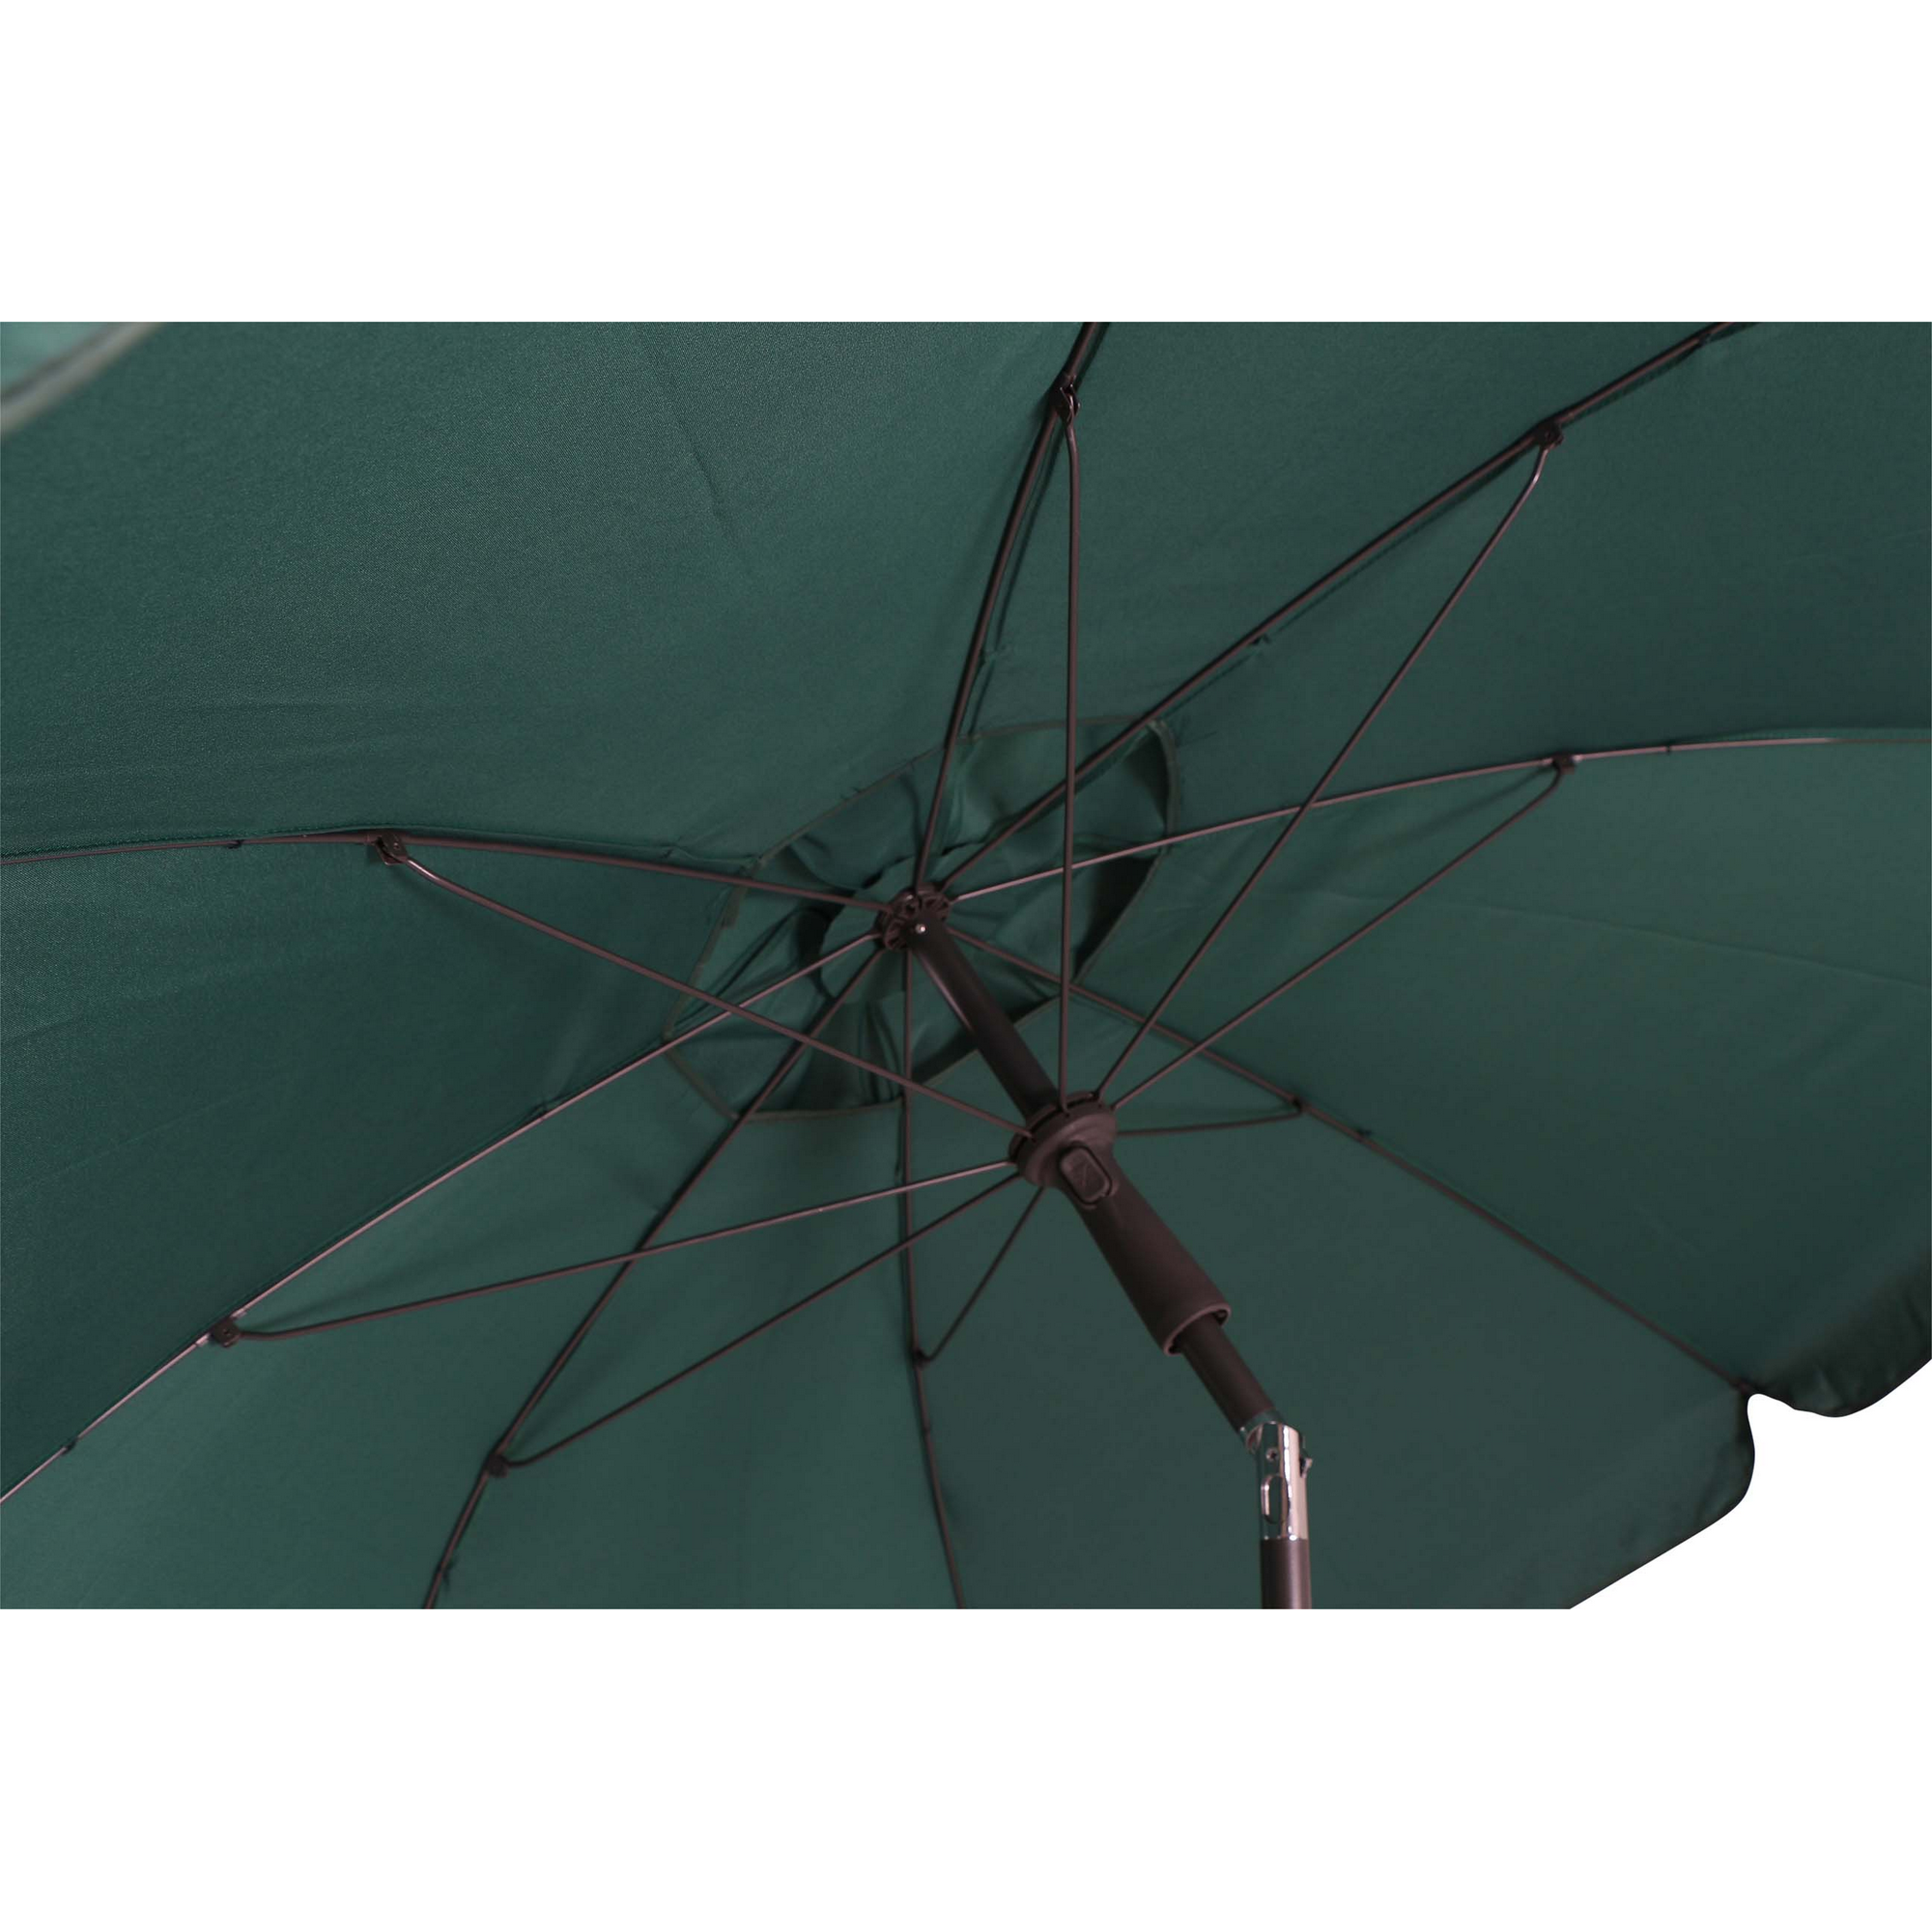 Sonnenschirm 'Tropico' anthrazit/grün Ø 250 cm + product picture